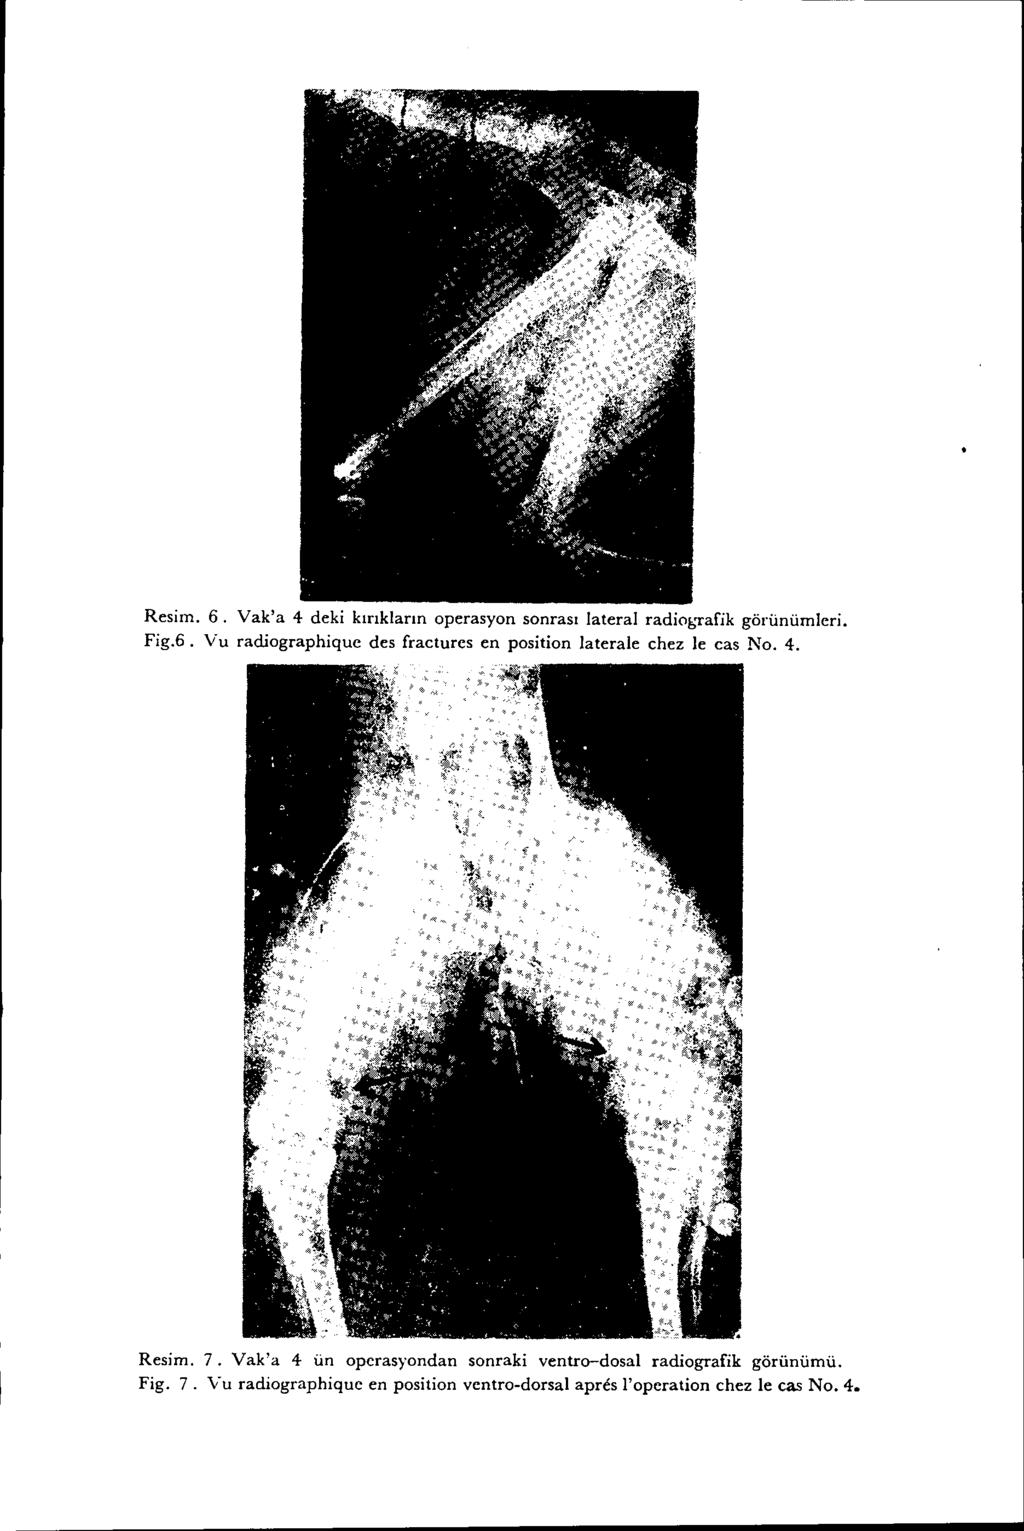 Resim. 6. Yak'a 4 deki kırıkların operasyon sonrası lateral radio~;rafik görünümleri. Fig.6. Vu radiographique des fraetures en position laterale ehez le eas No. 4. Resim.